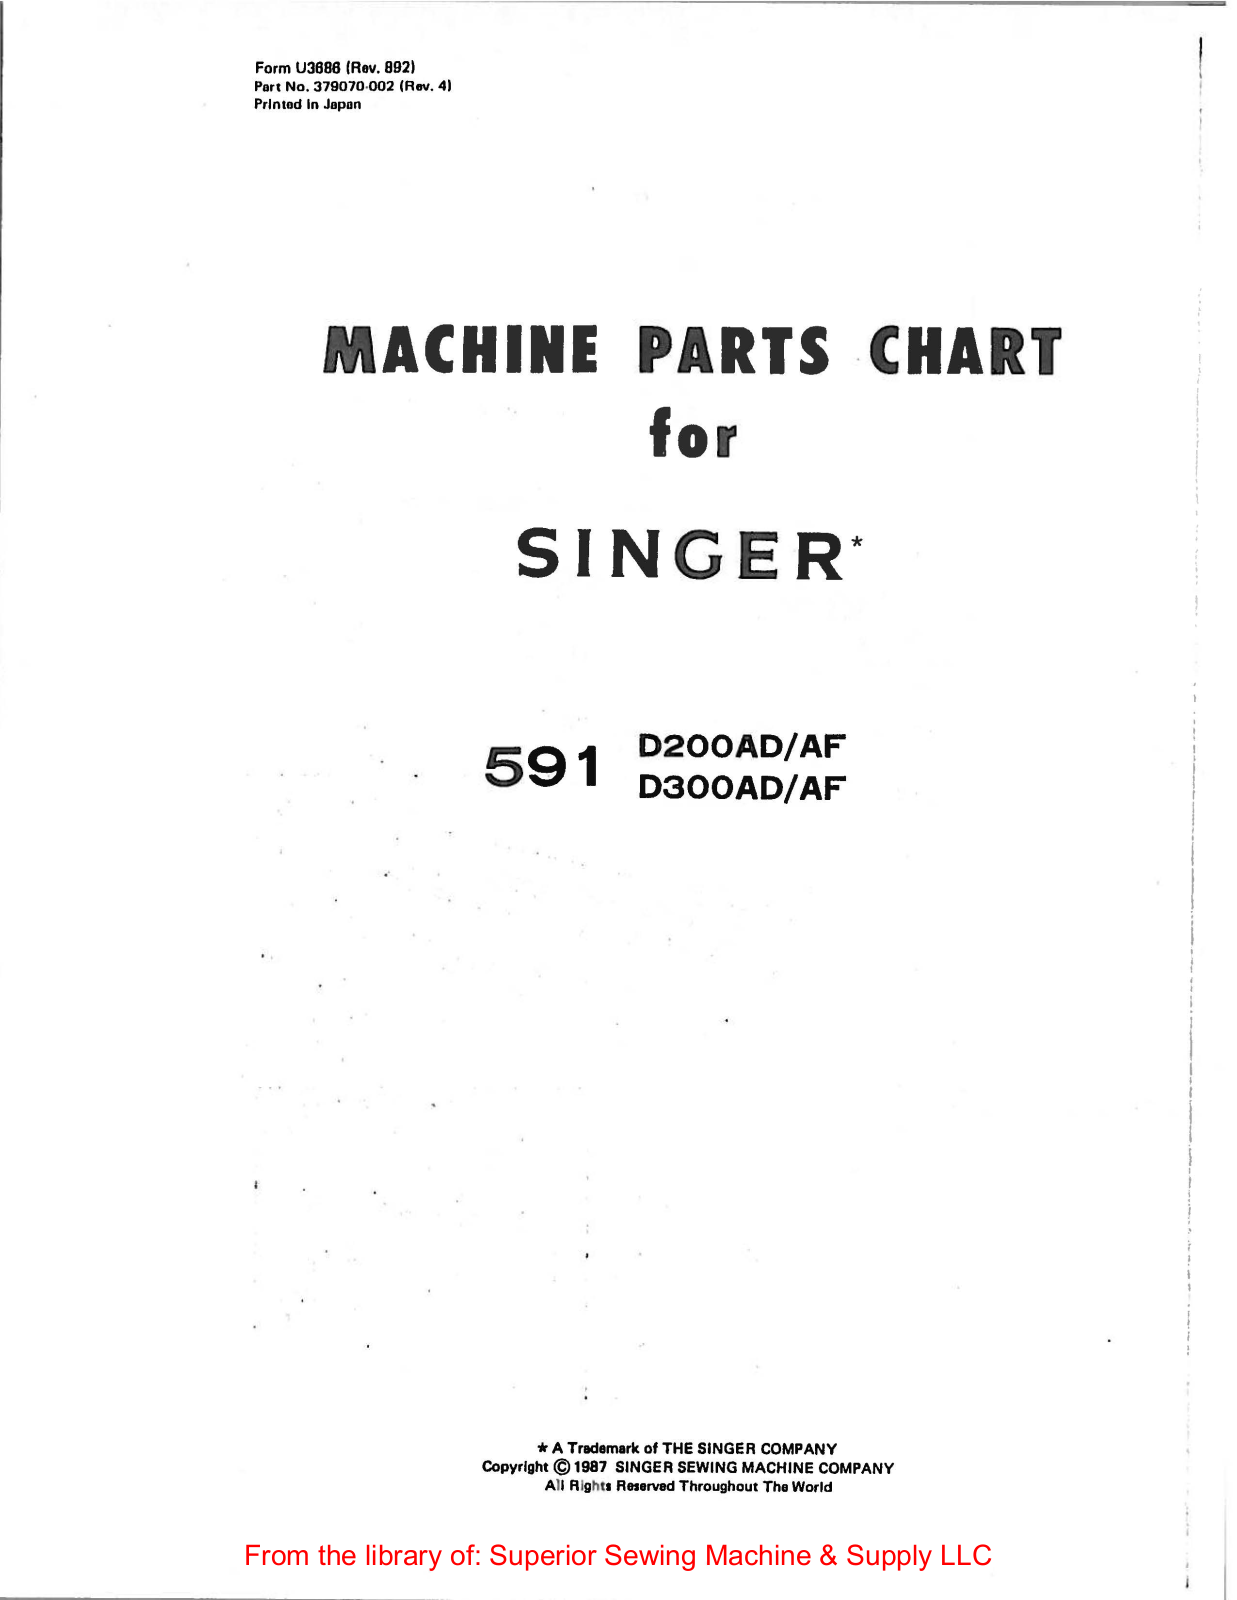 Singer 591D200AD-AF, 591D300AD-AF Manual